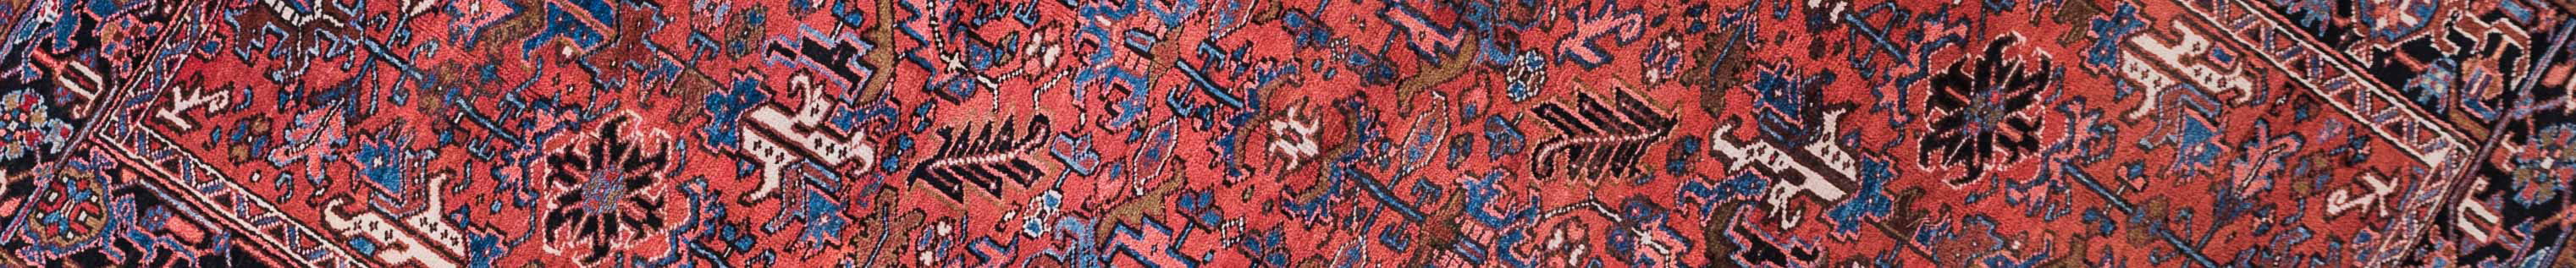 Gravan Persian Carpet Rug N1Carpet Canada Montreal Tapis Persan 3200